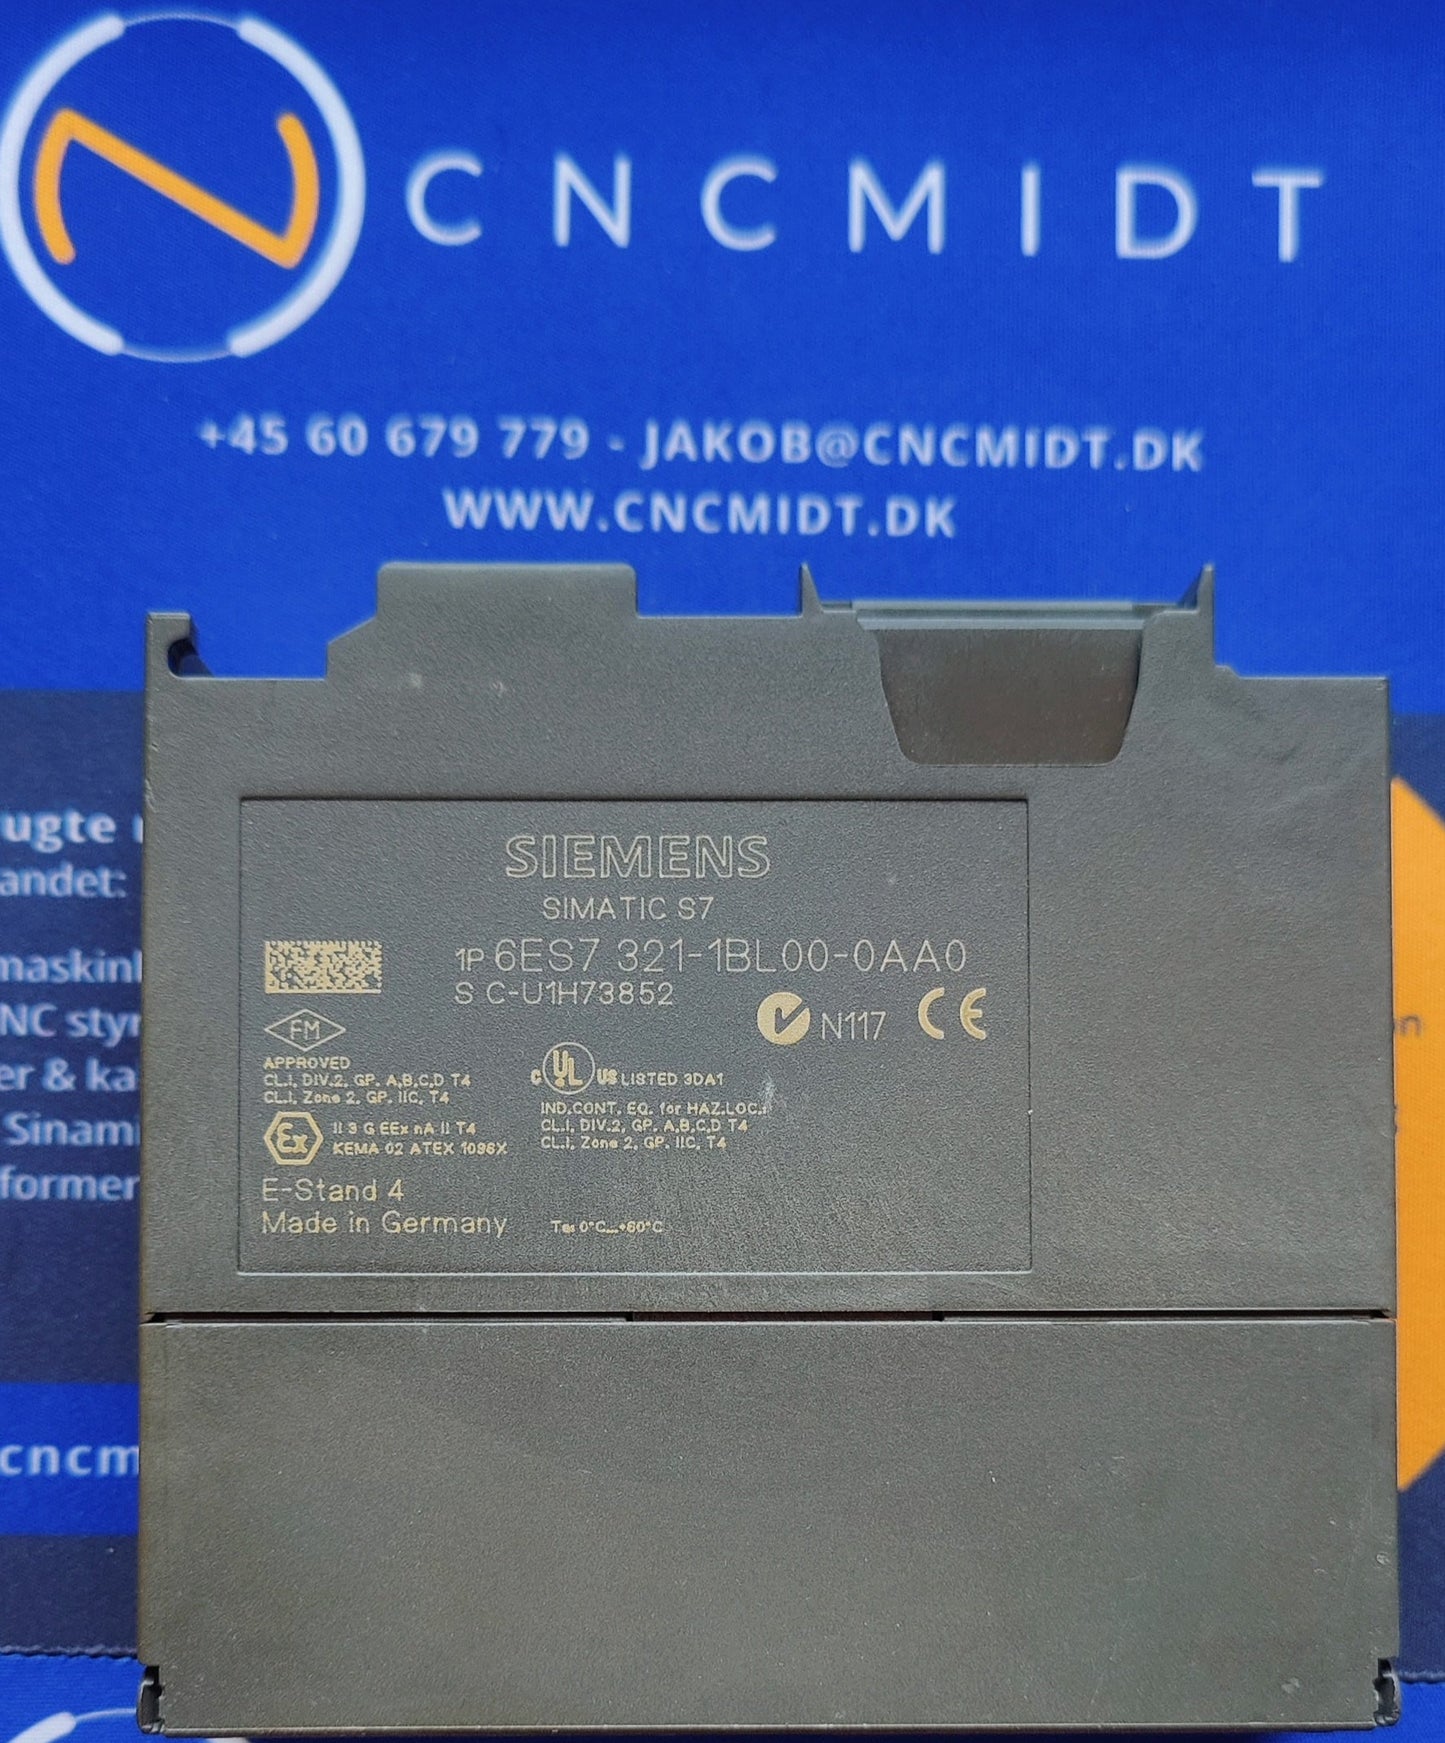 S7-300, SM321, DI32x24VDC (6ES7321-1BL00-0AA0)